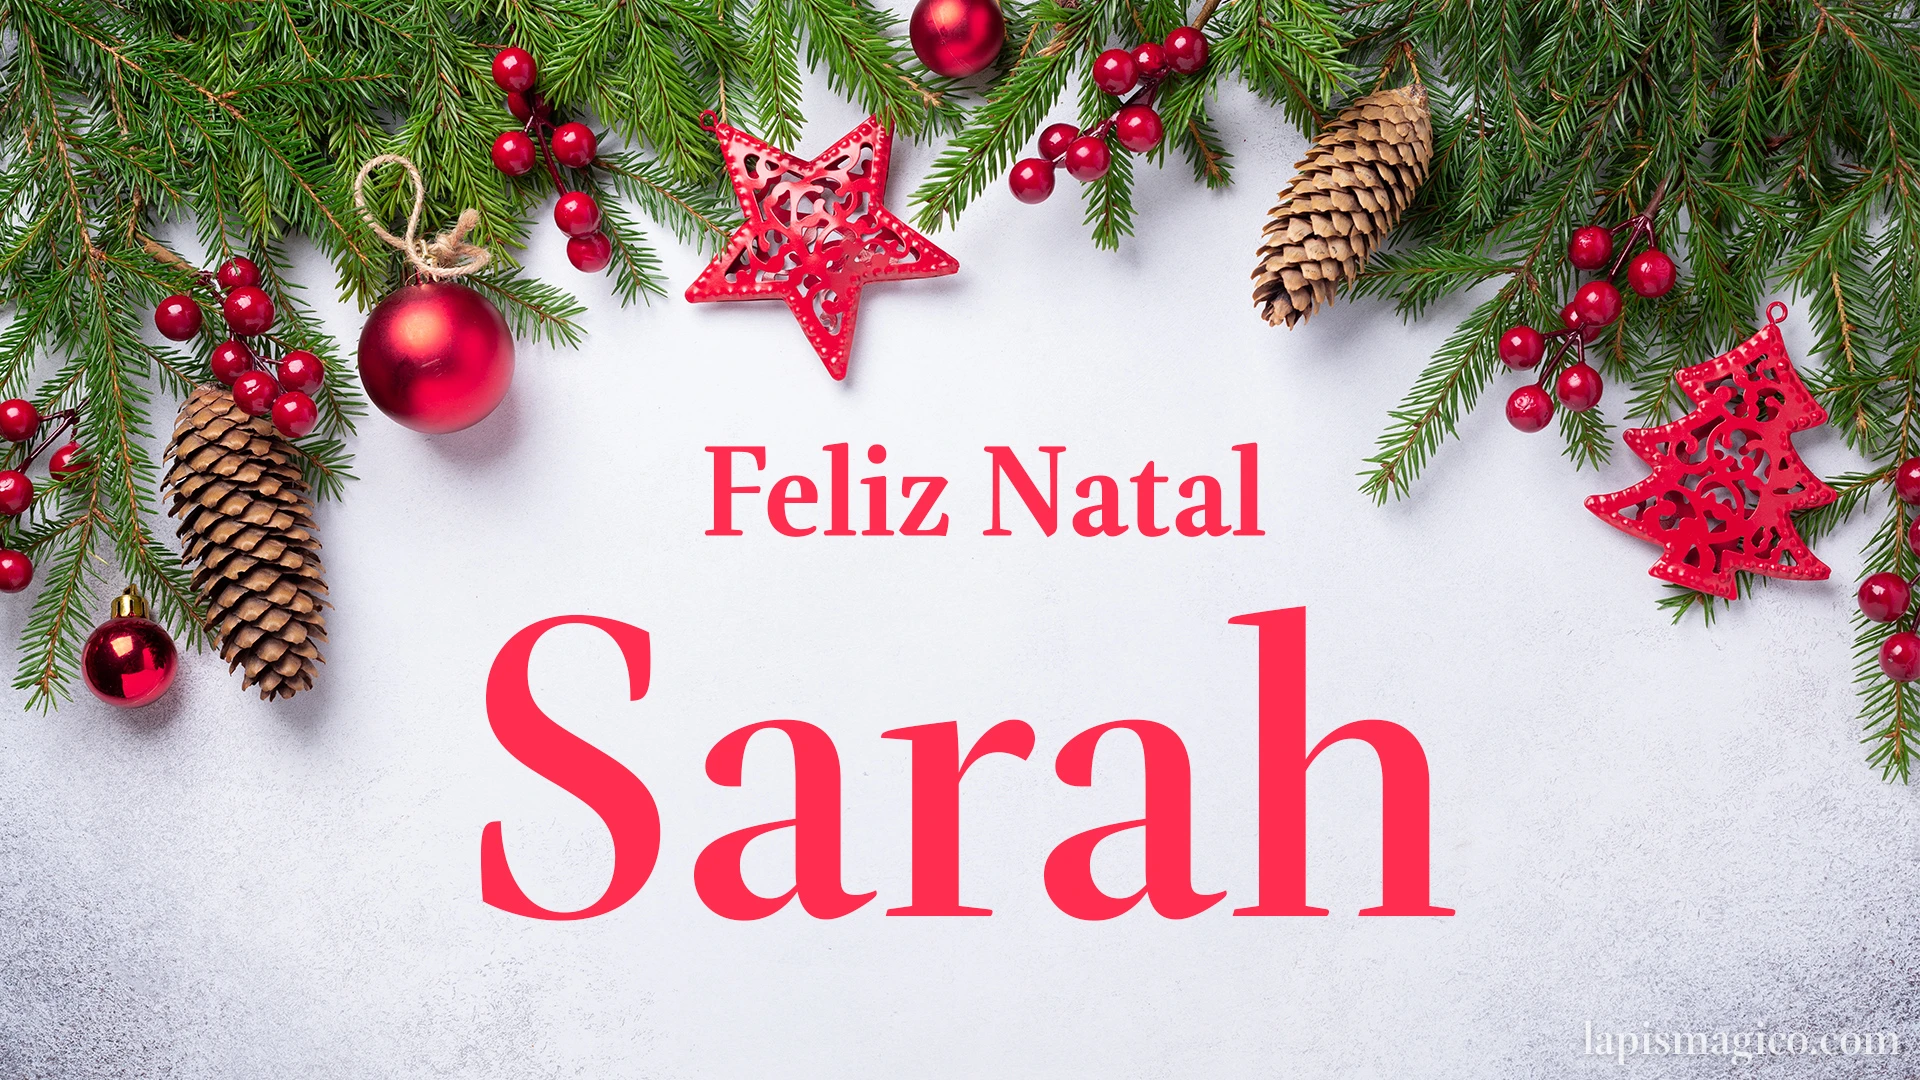 Oh Sarah, cinco postais de Feliz Natal Postal com o teu nome